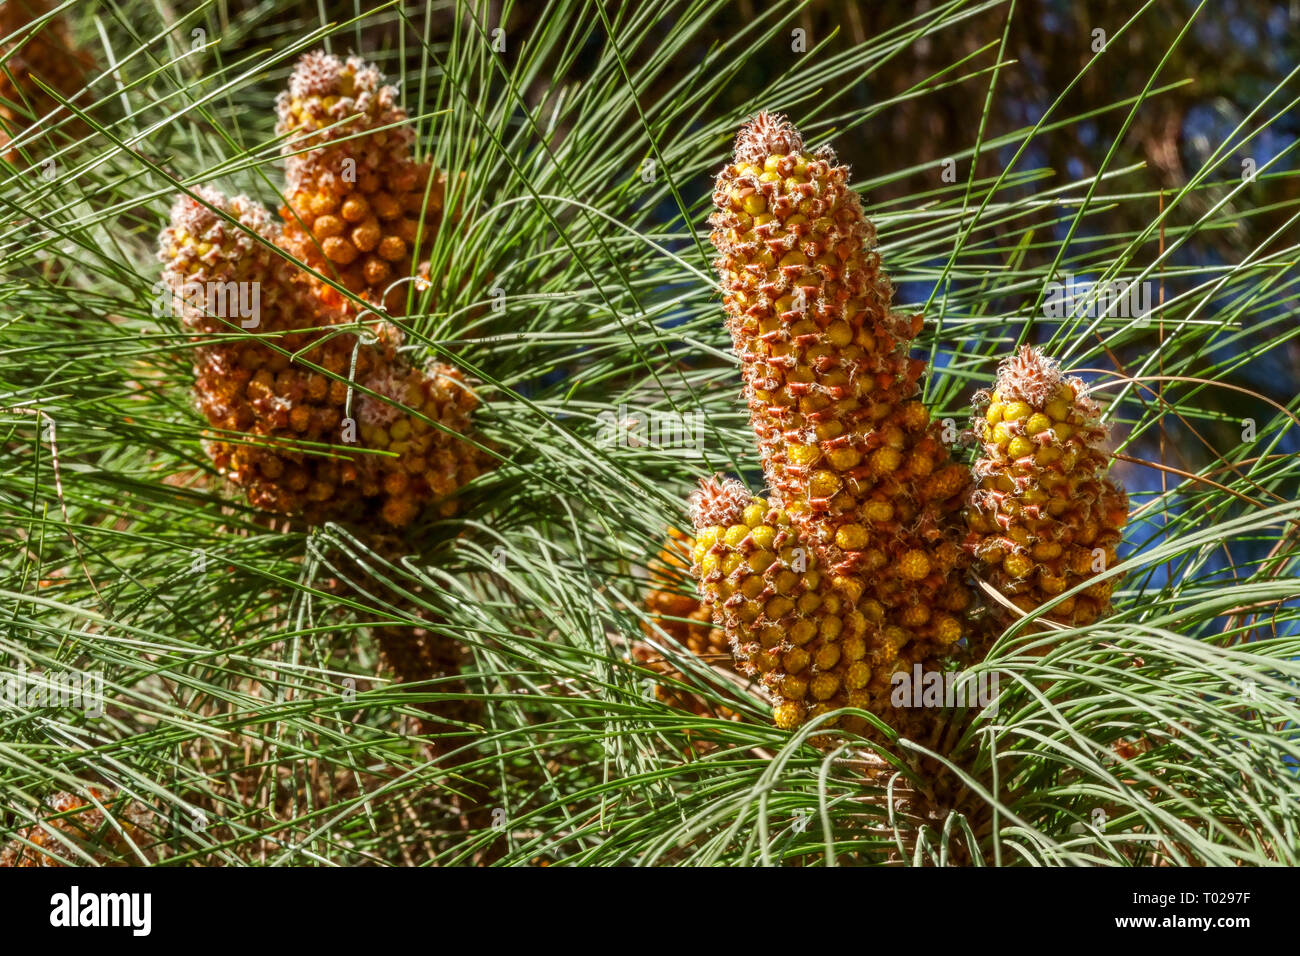 Pino delle Isole Canarie, Pinus canariensis, coni primaverili coni maschili, ricchi di polline Foto Stock